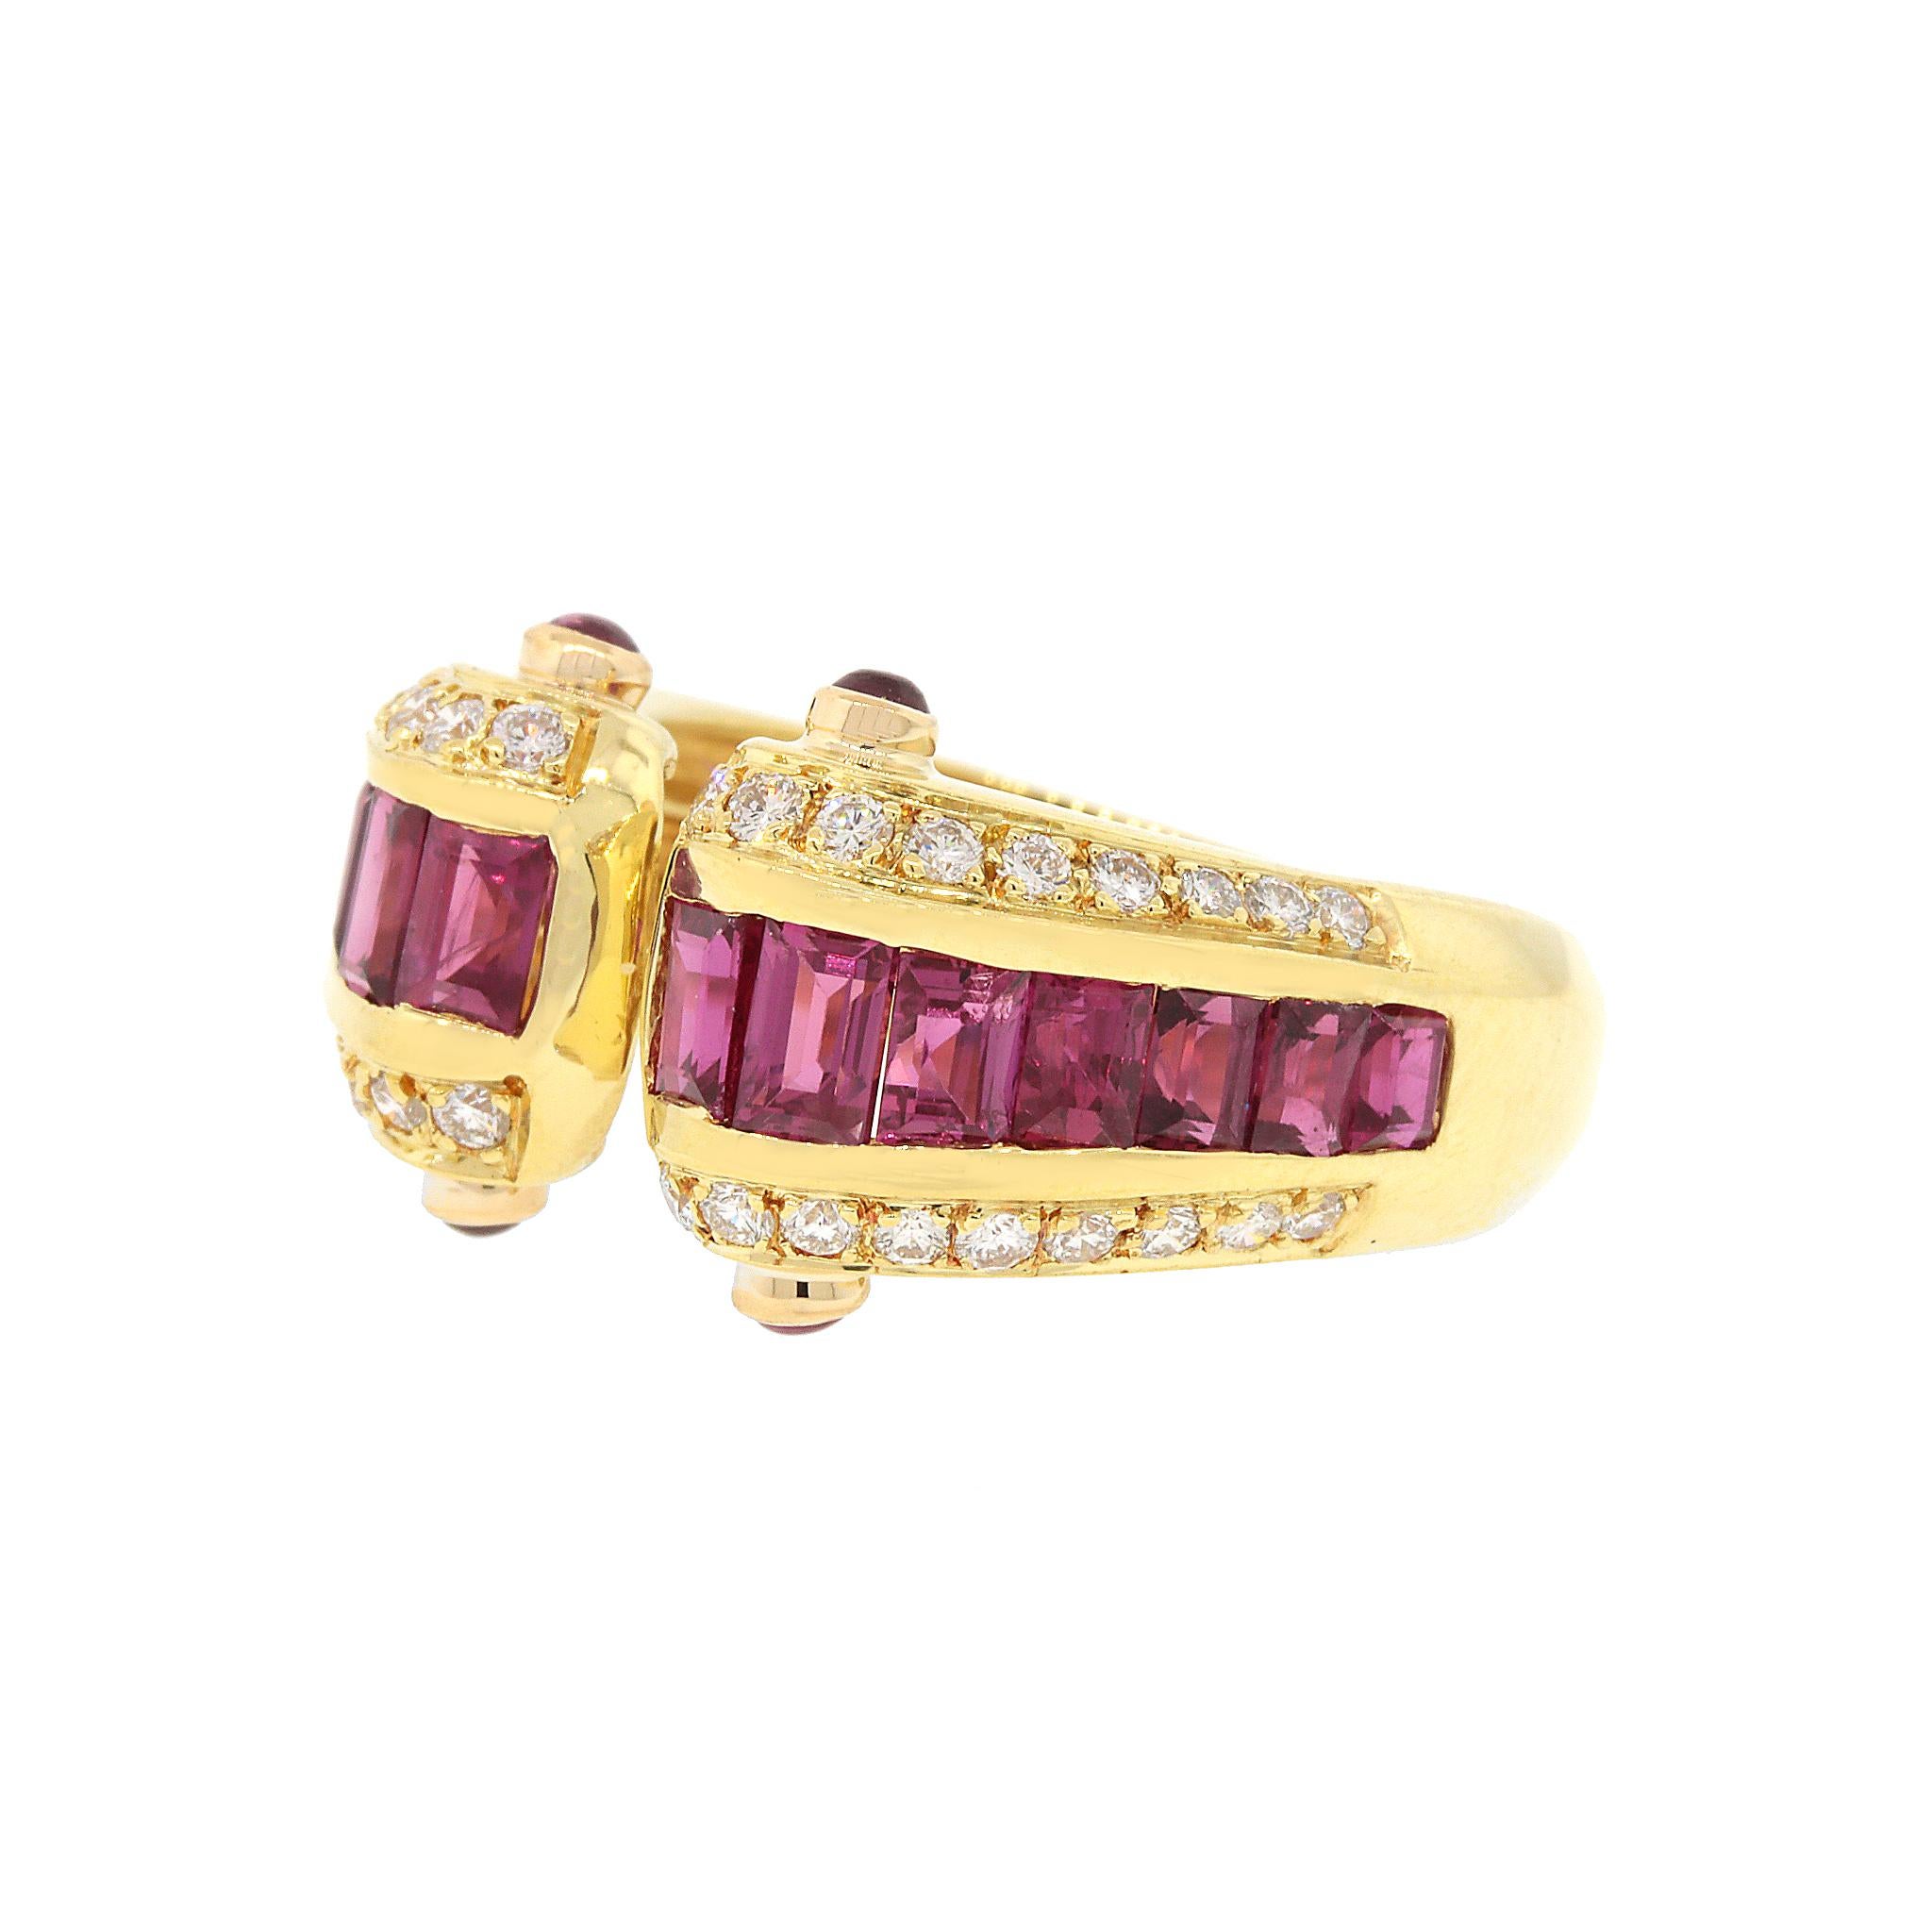 Rubine und Diamanten passen wie die Faust aufs Auge, und die natürliche Schönheit dieser Kombination kommt in diesem atemberaubenden Ring perfekt zum Ausdruck.  

18 kt Gelbgold
Rubin: 1,50 tcw
Diamant: 0,30 ct twd
Ring Größe: 6.5
Gesamtgewicht: 7,2